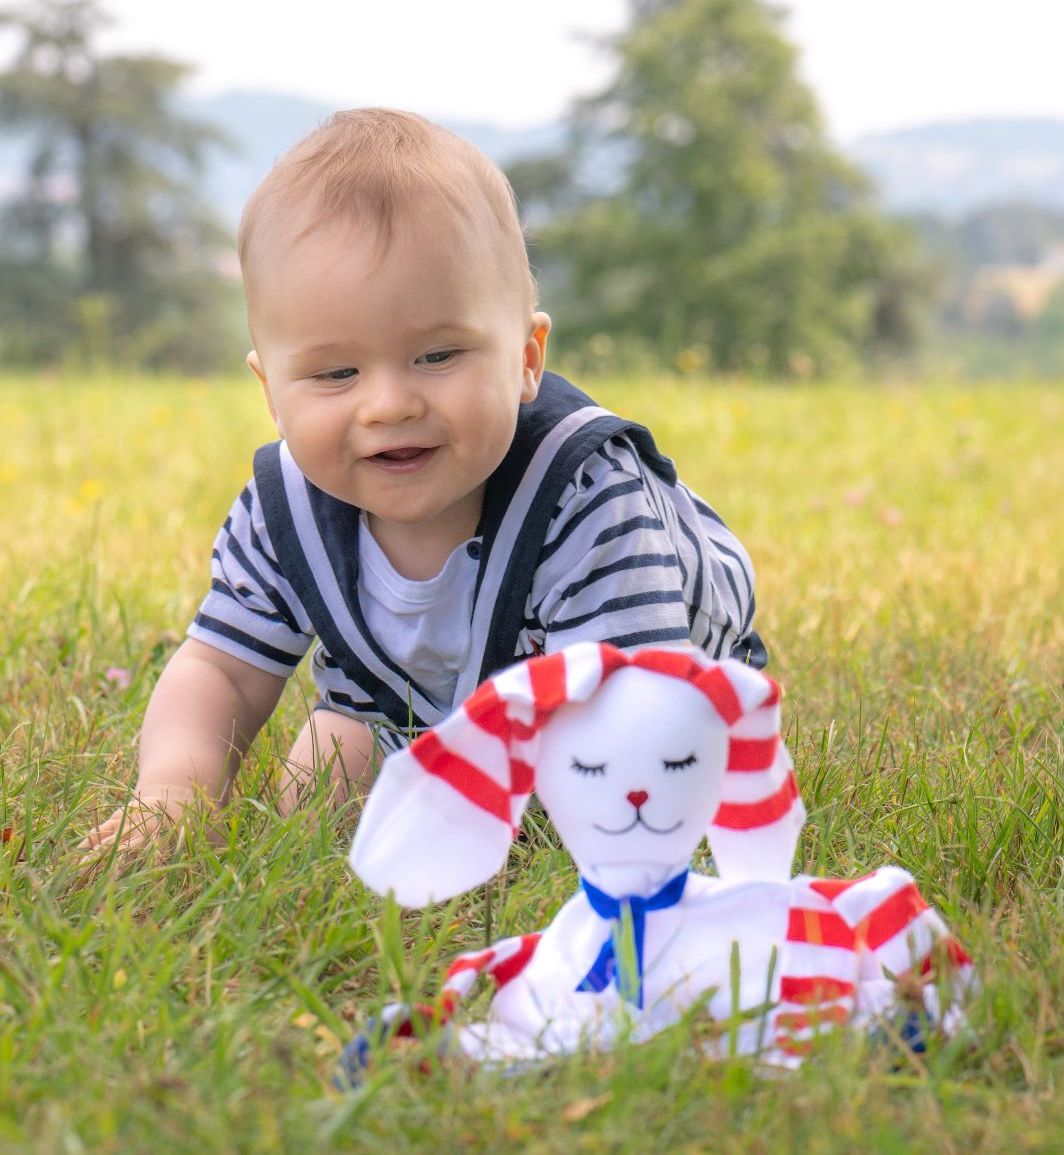 petit garçon blond de 6 mois qui joue avec un doudou lapin à rayures dans un jardin.jpg